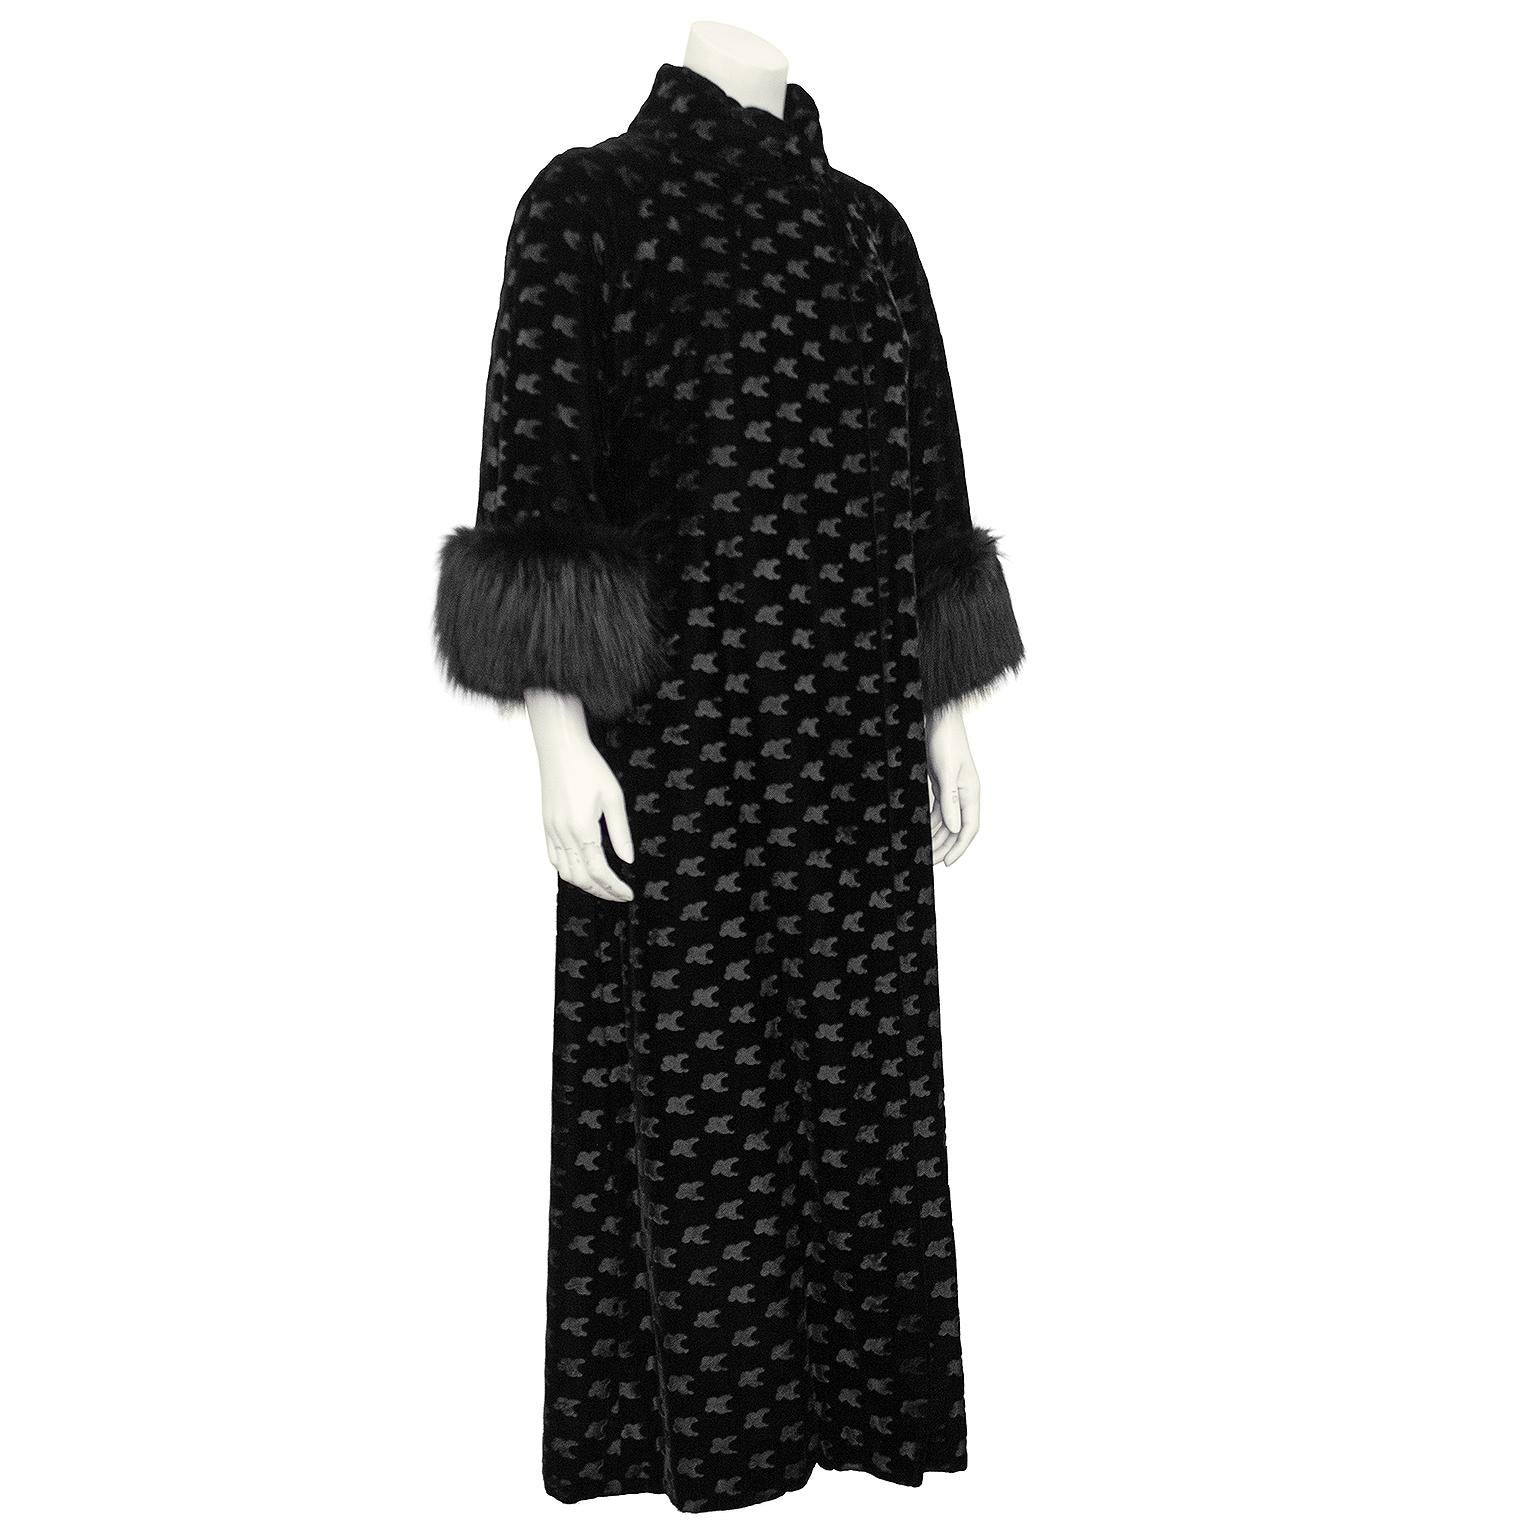 Elegant manteau de soirée des années 1960 en velours noir décoré au pochoir et doté de poignets en renard teintés. Il se porte généralement sur une robe de soirée ou une robe de cocktail pour un événement à cravate noire ou une soirée d'ouverture à